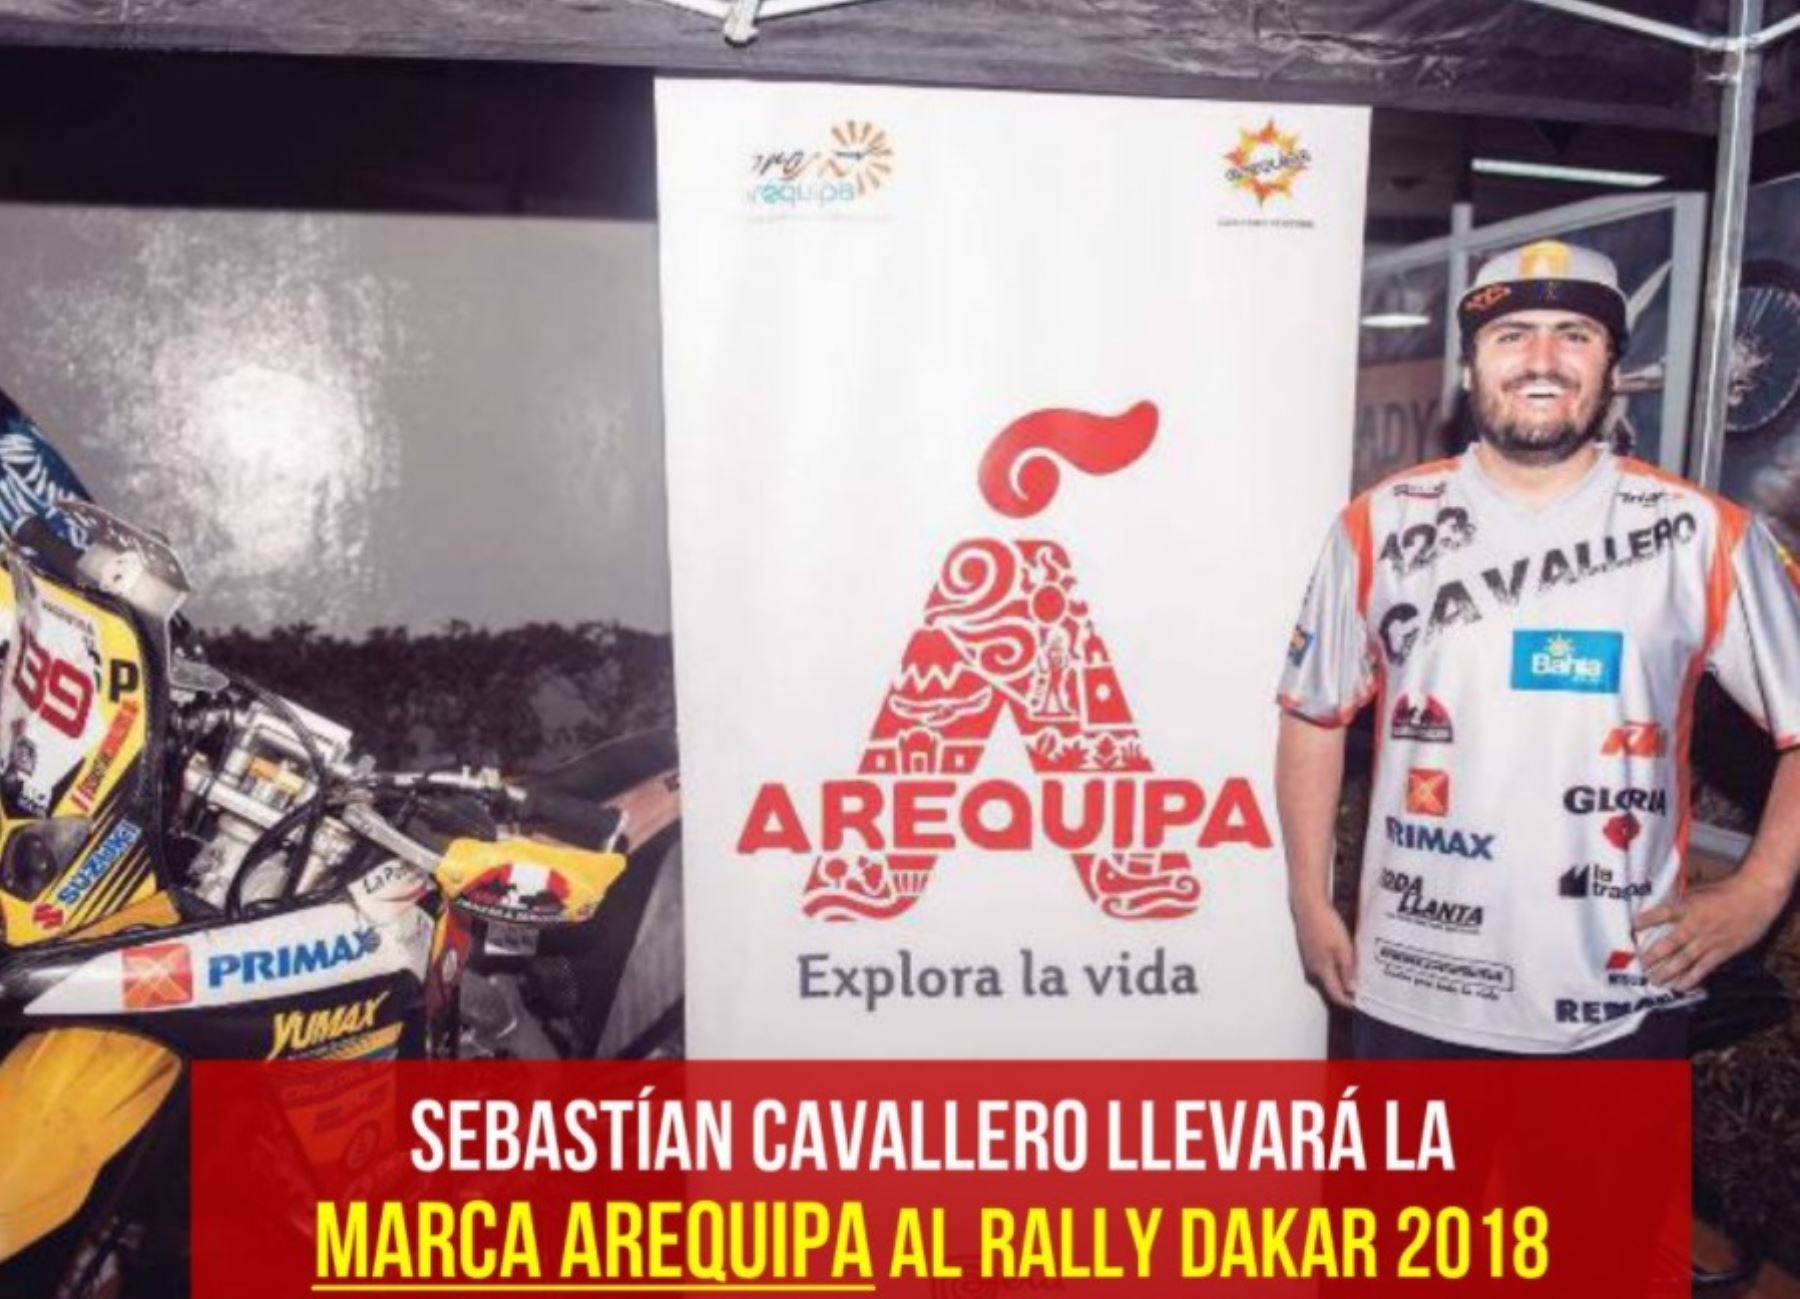 El destacado piloto arequipeño Sebastián Cavallero, reconocido como primer embajador deportivo de dicha región, llevará la Marca Arequipa durante su participación en el Dakar 2018, informó el gobierno regional.